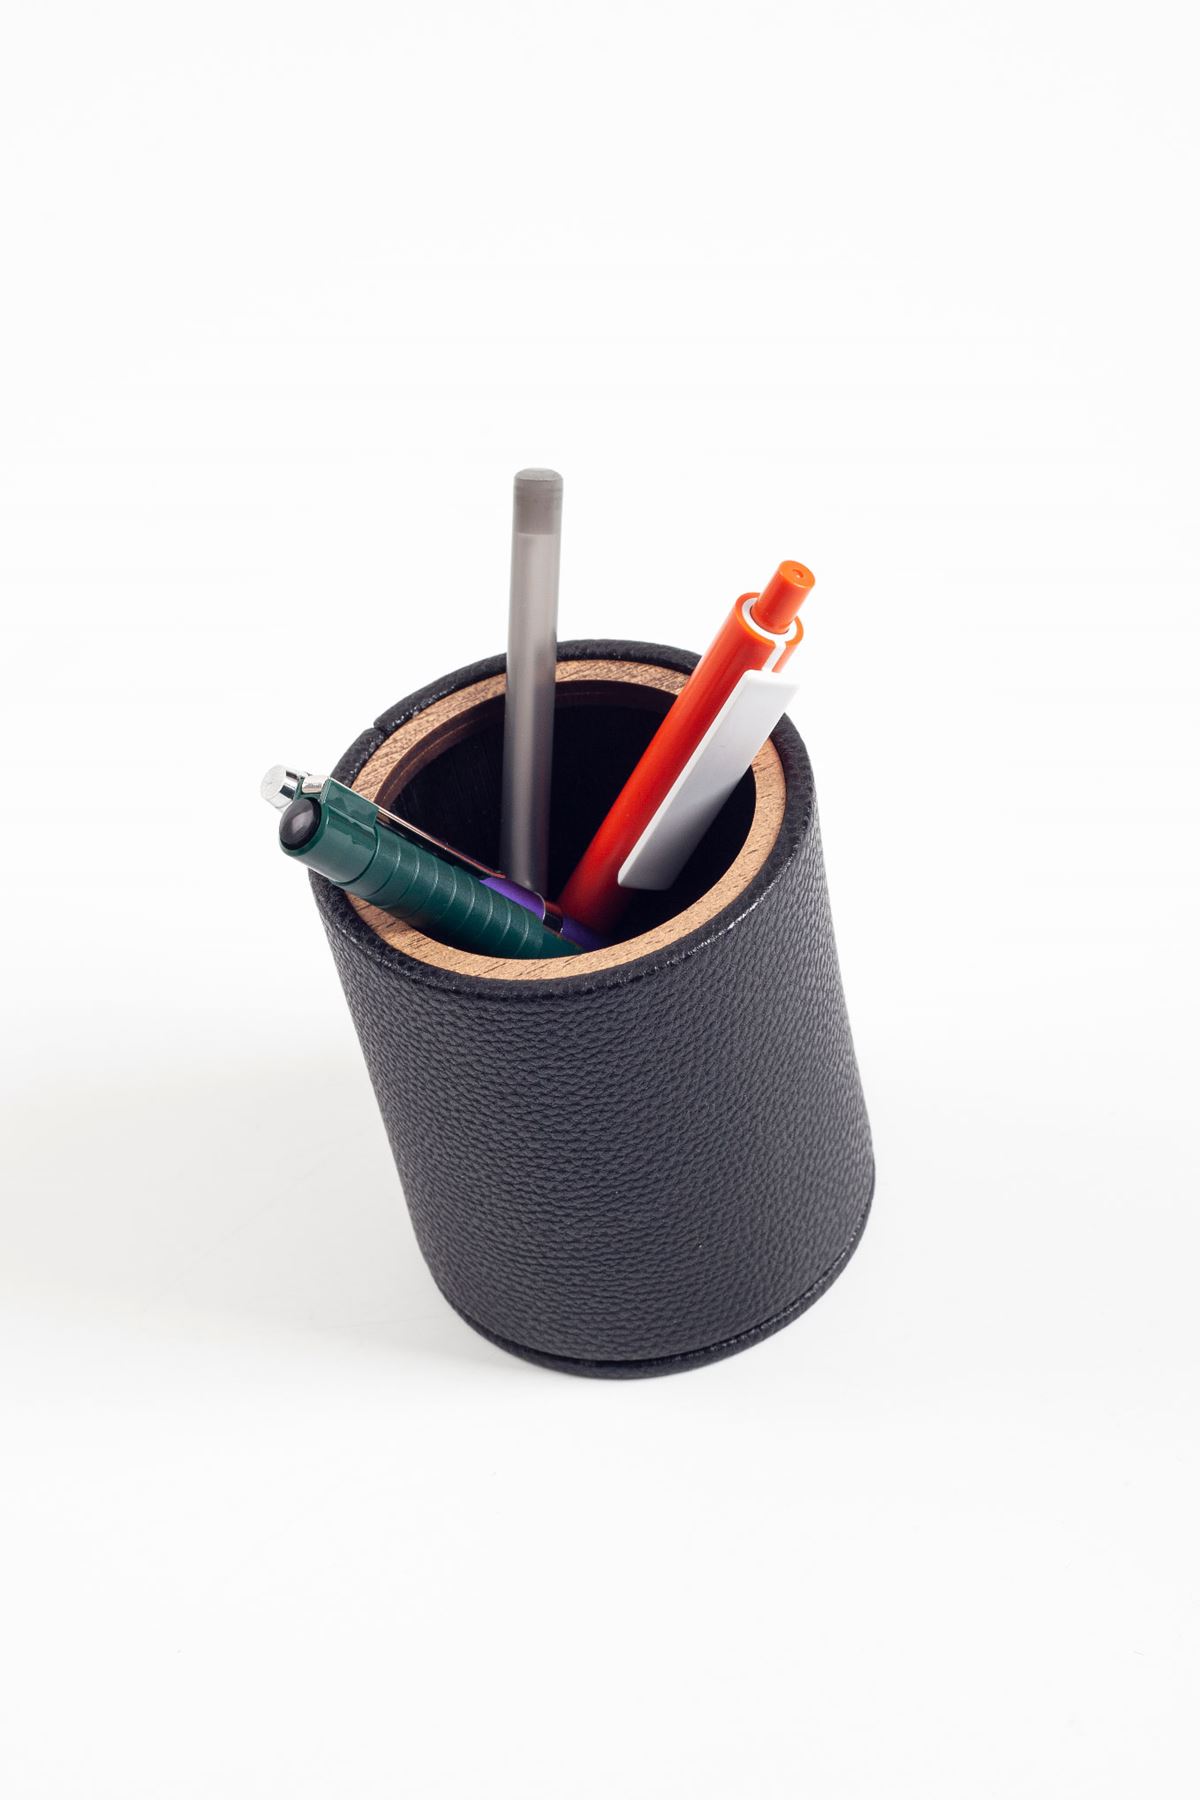 Desktop Leather Oval Wooden Detailed Pen Holder Black